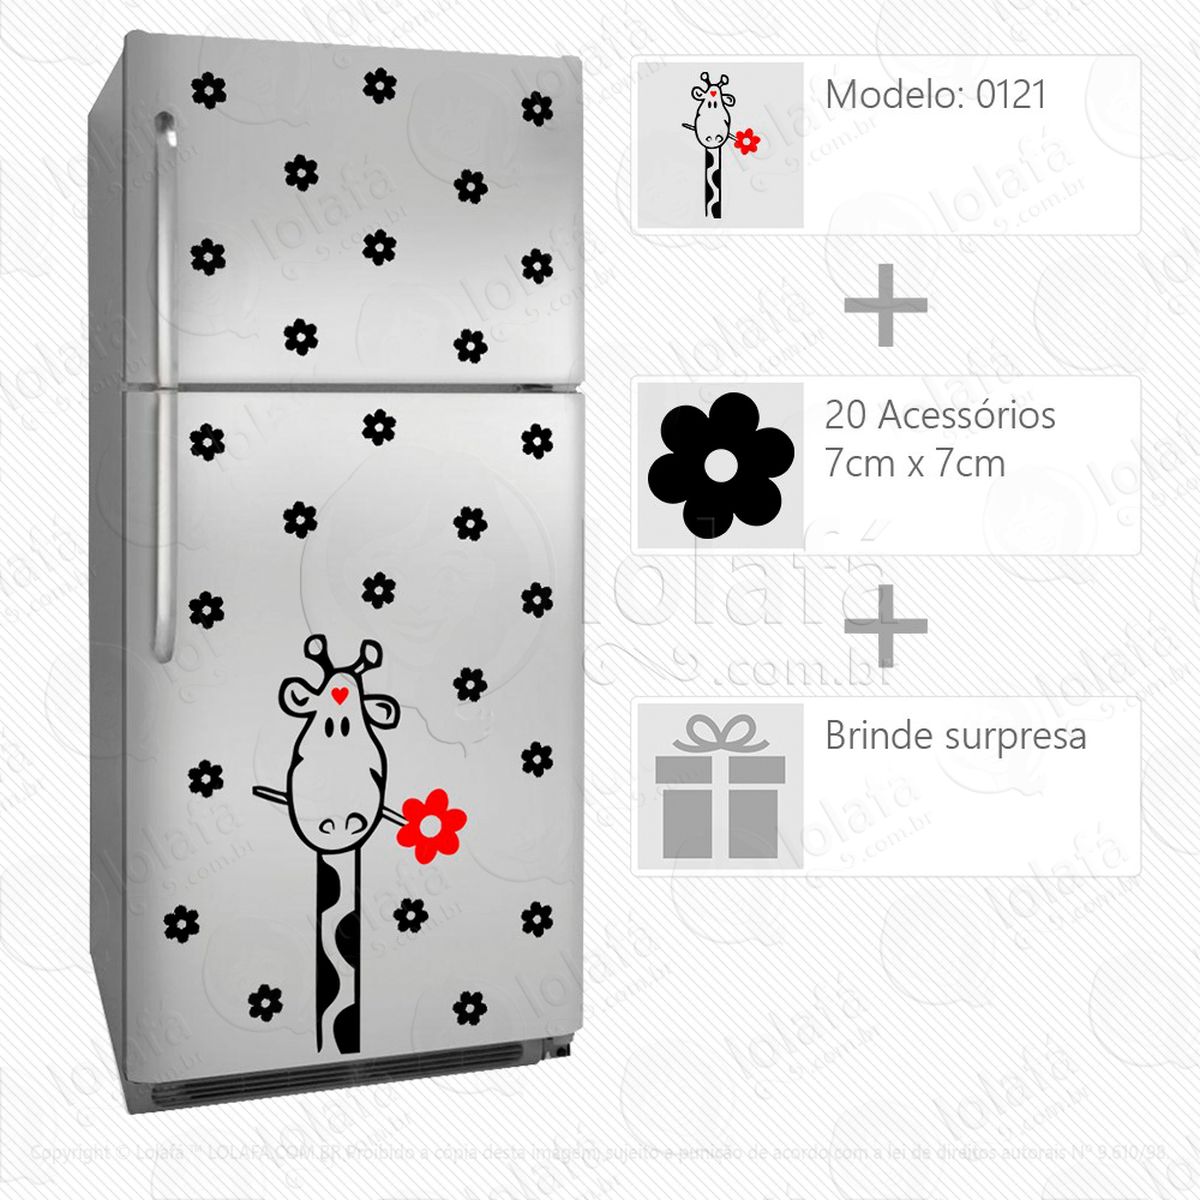 girafa adesivo para geladeira e frigobar - mod:121